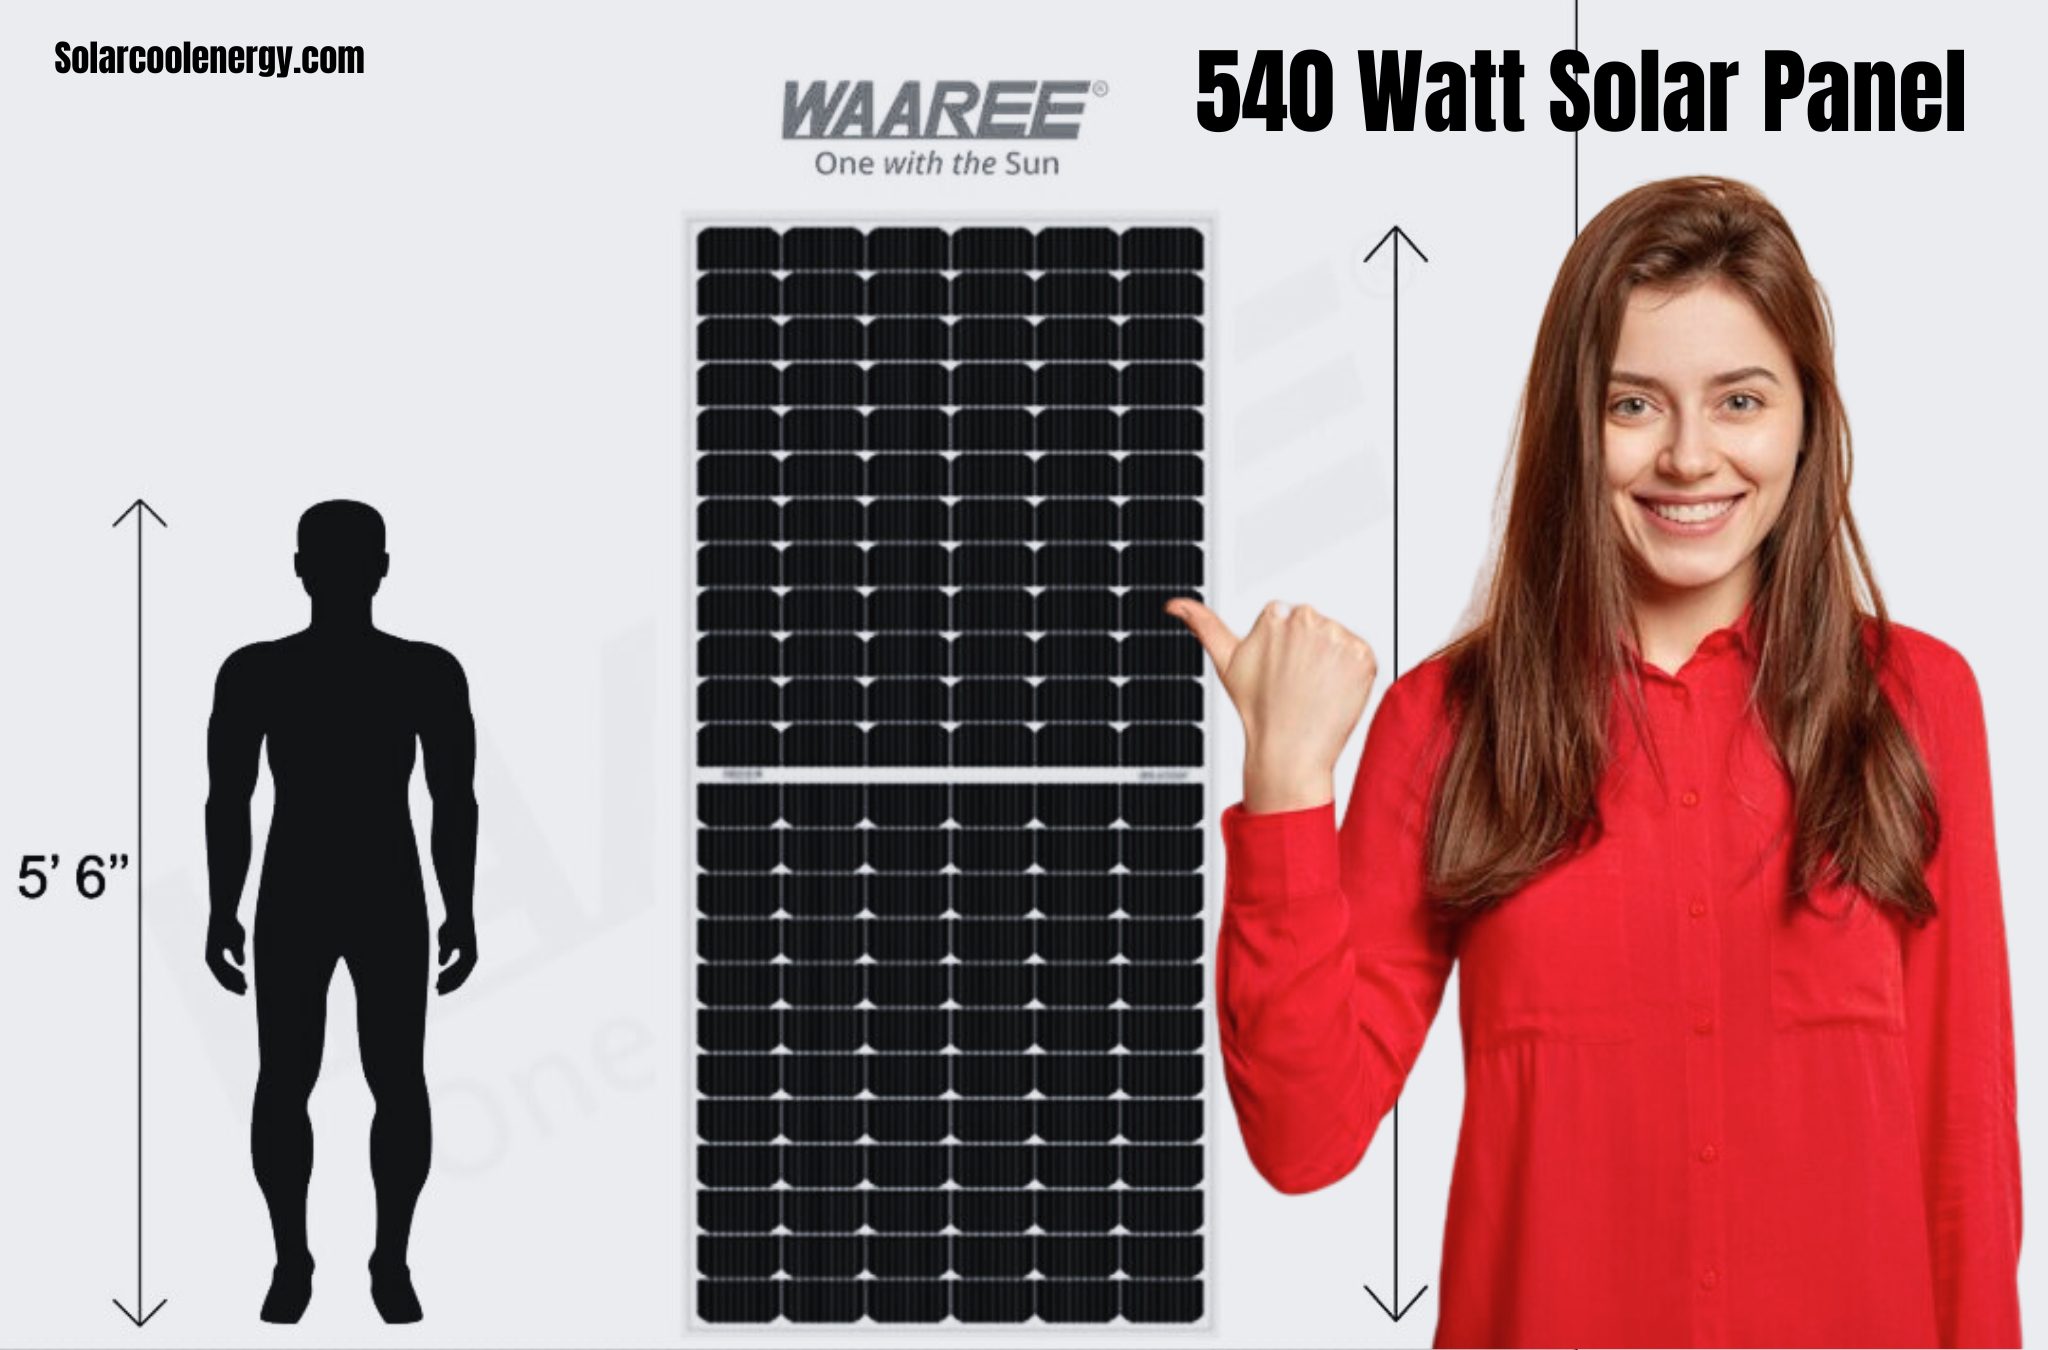 540 Watt Solar Panel